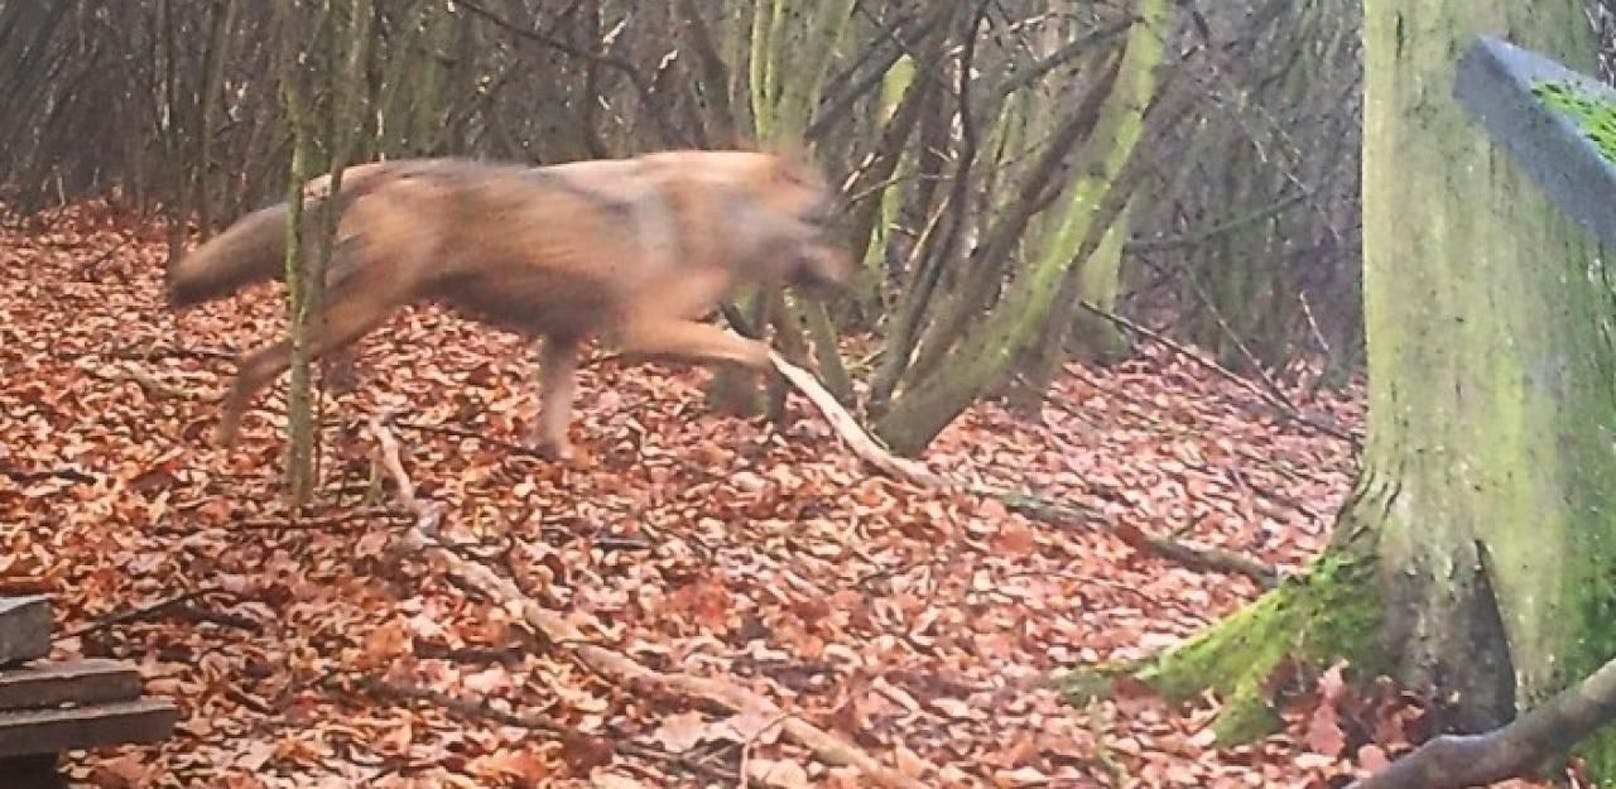 Wolf-Alarm: Tier tappte in Fotofalle im Bezirk Mistelbach.